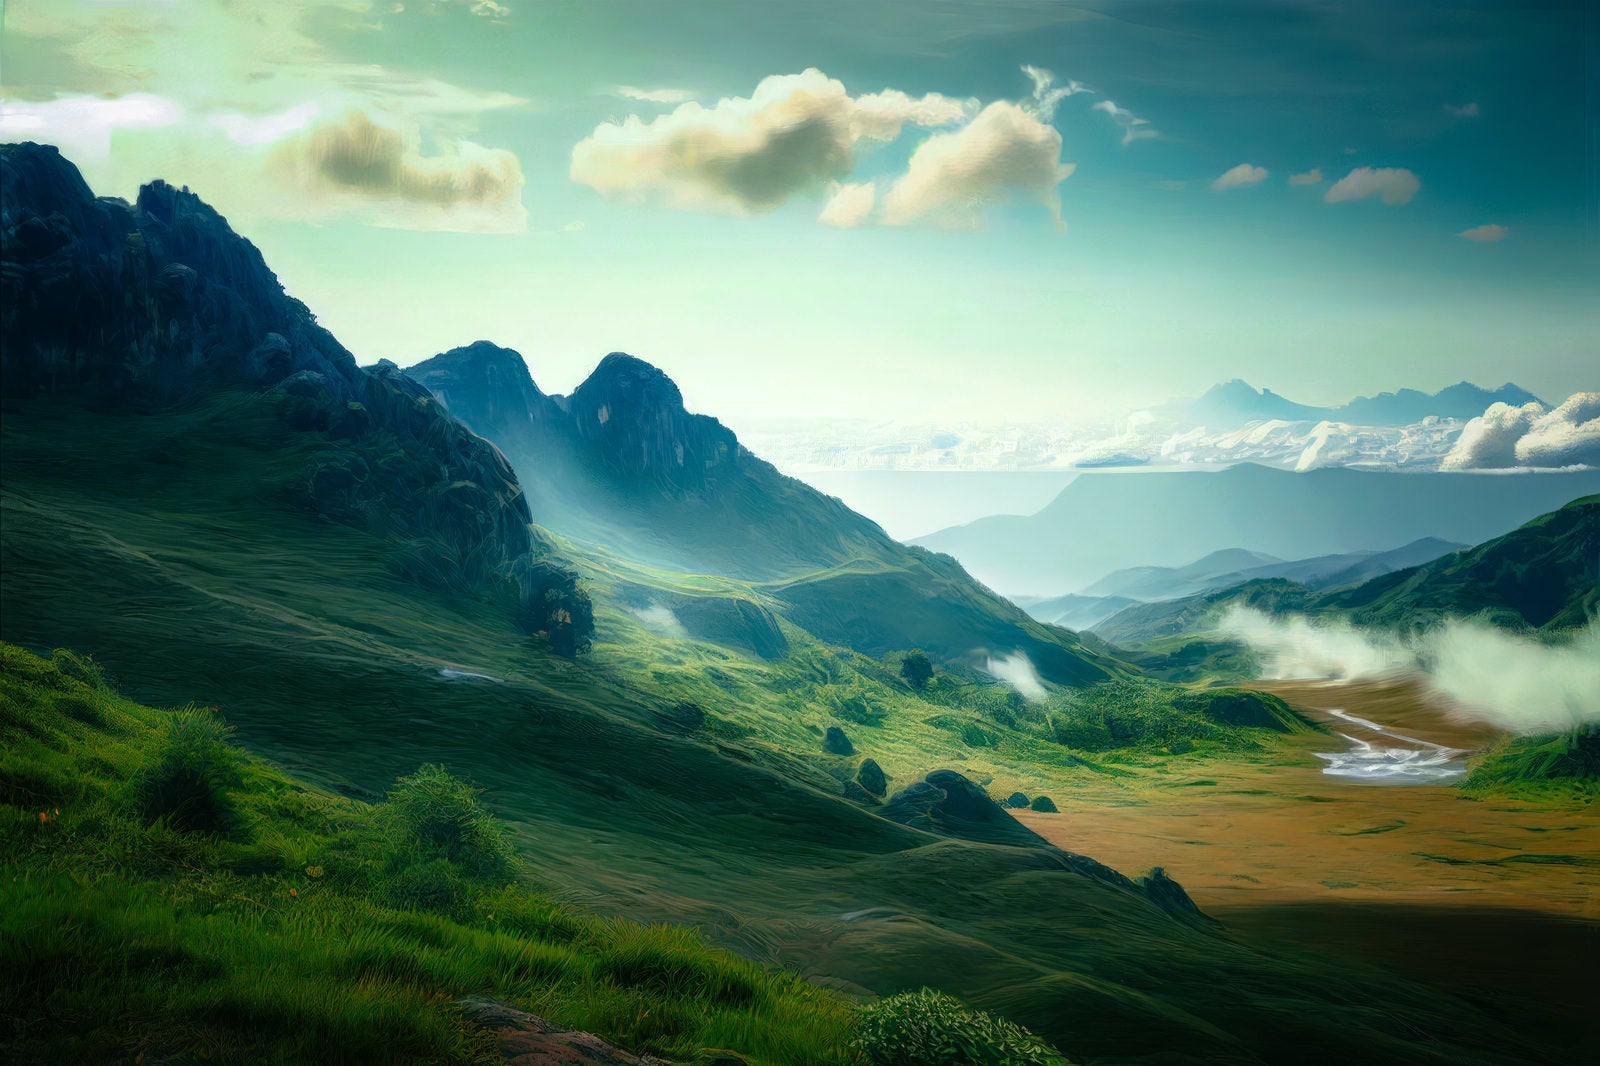 「高原が織りなす山々の風景」の写真